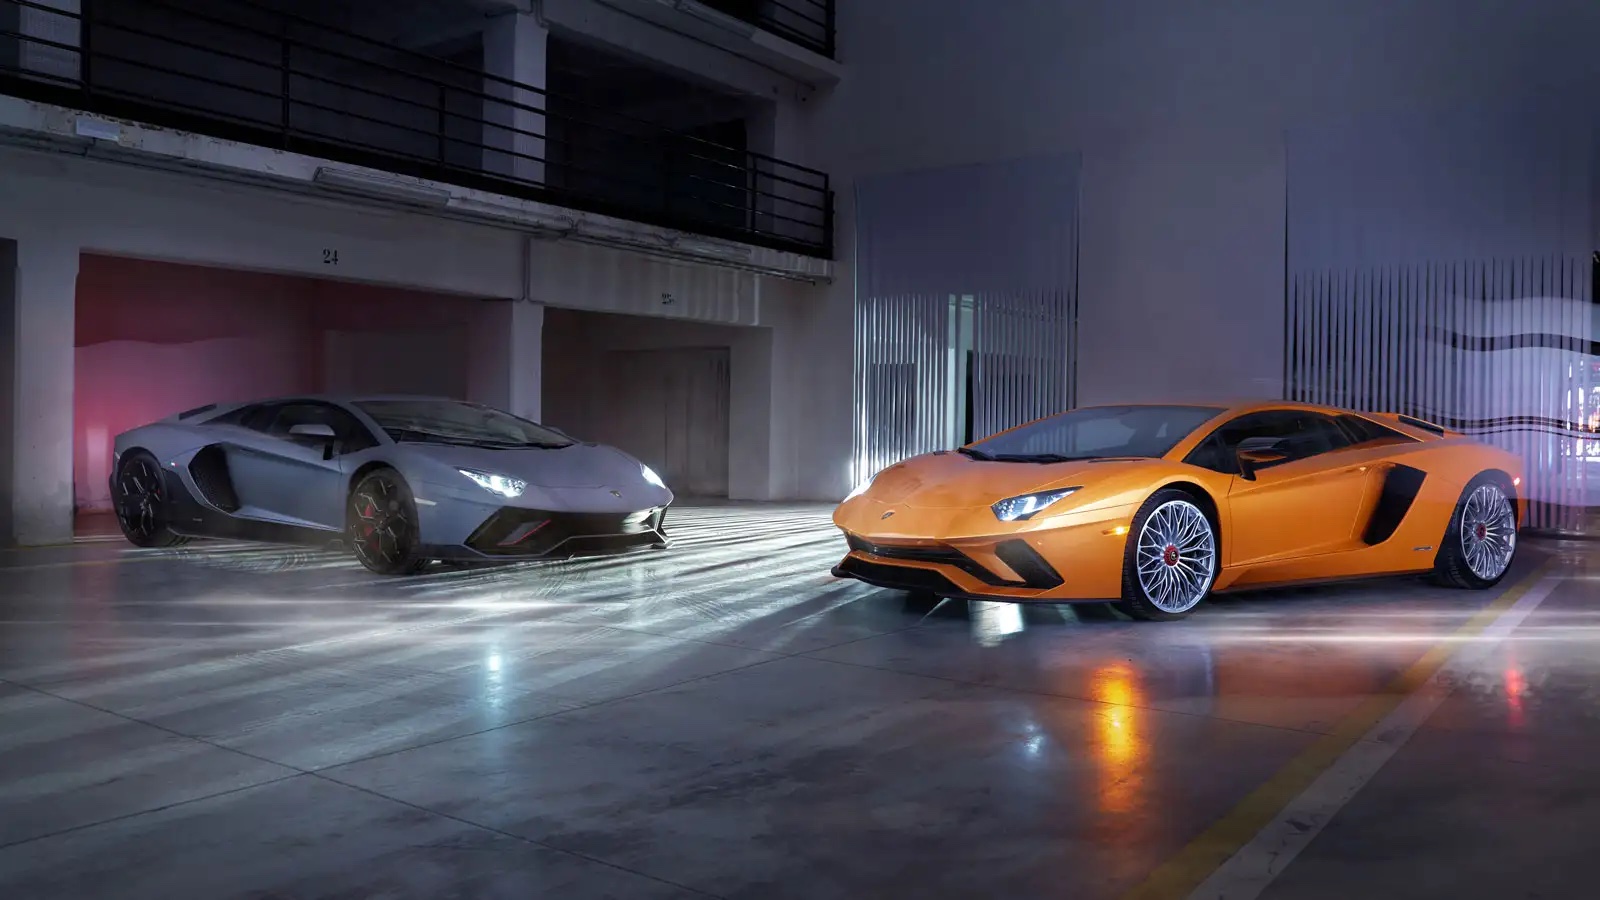 Lamborghini xuất xưởng siêu xe Aventador cuối cùng